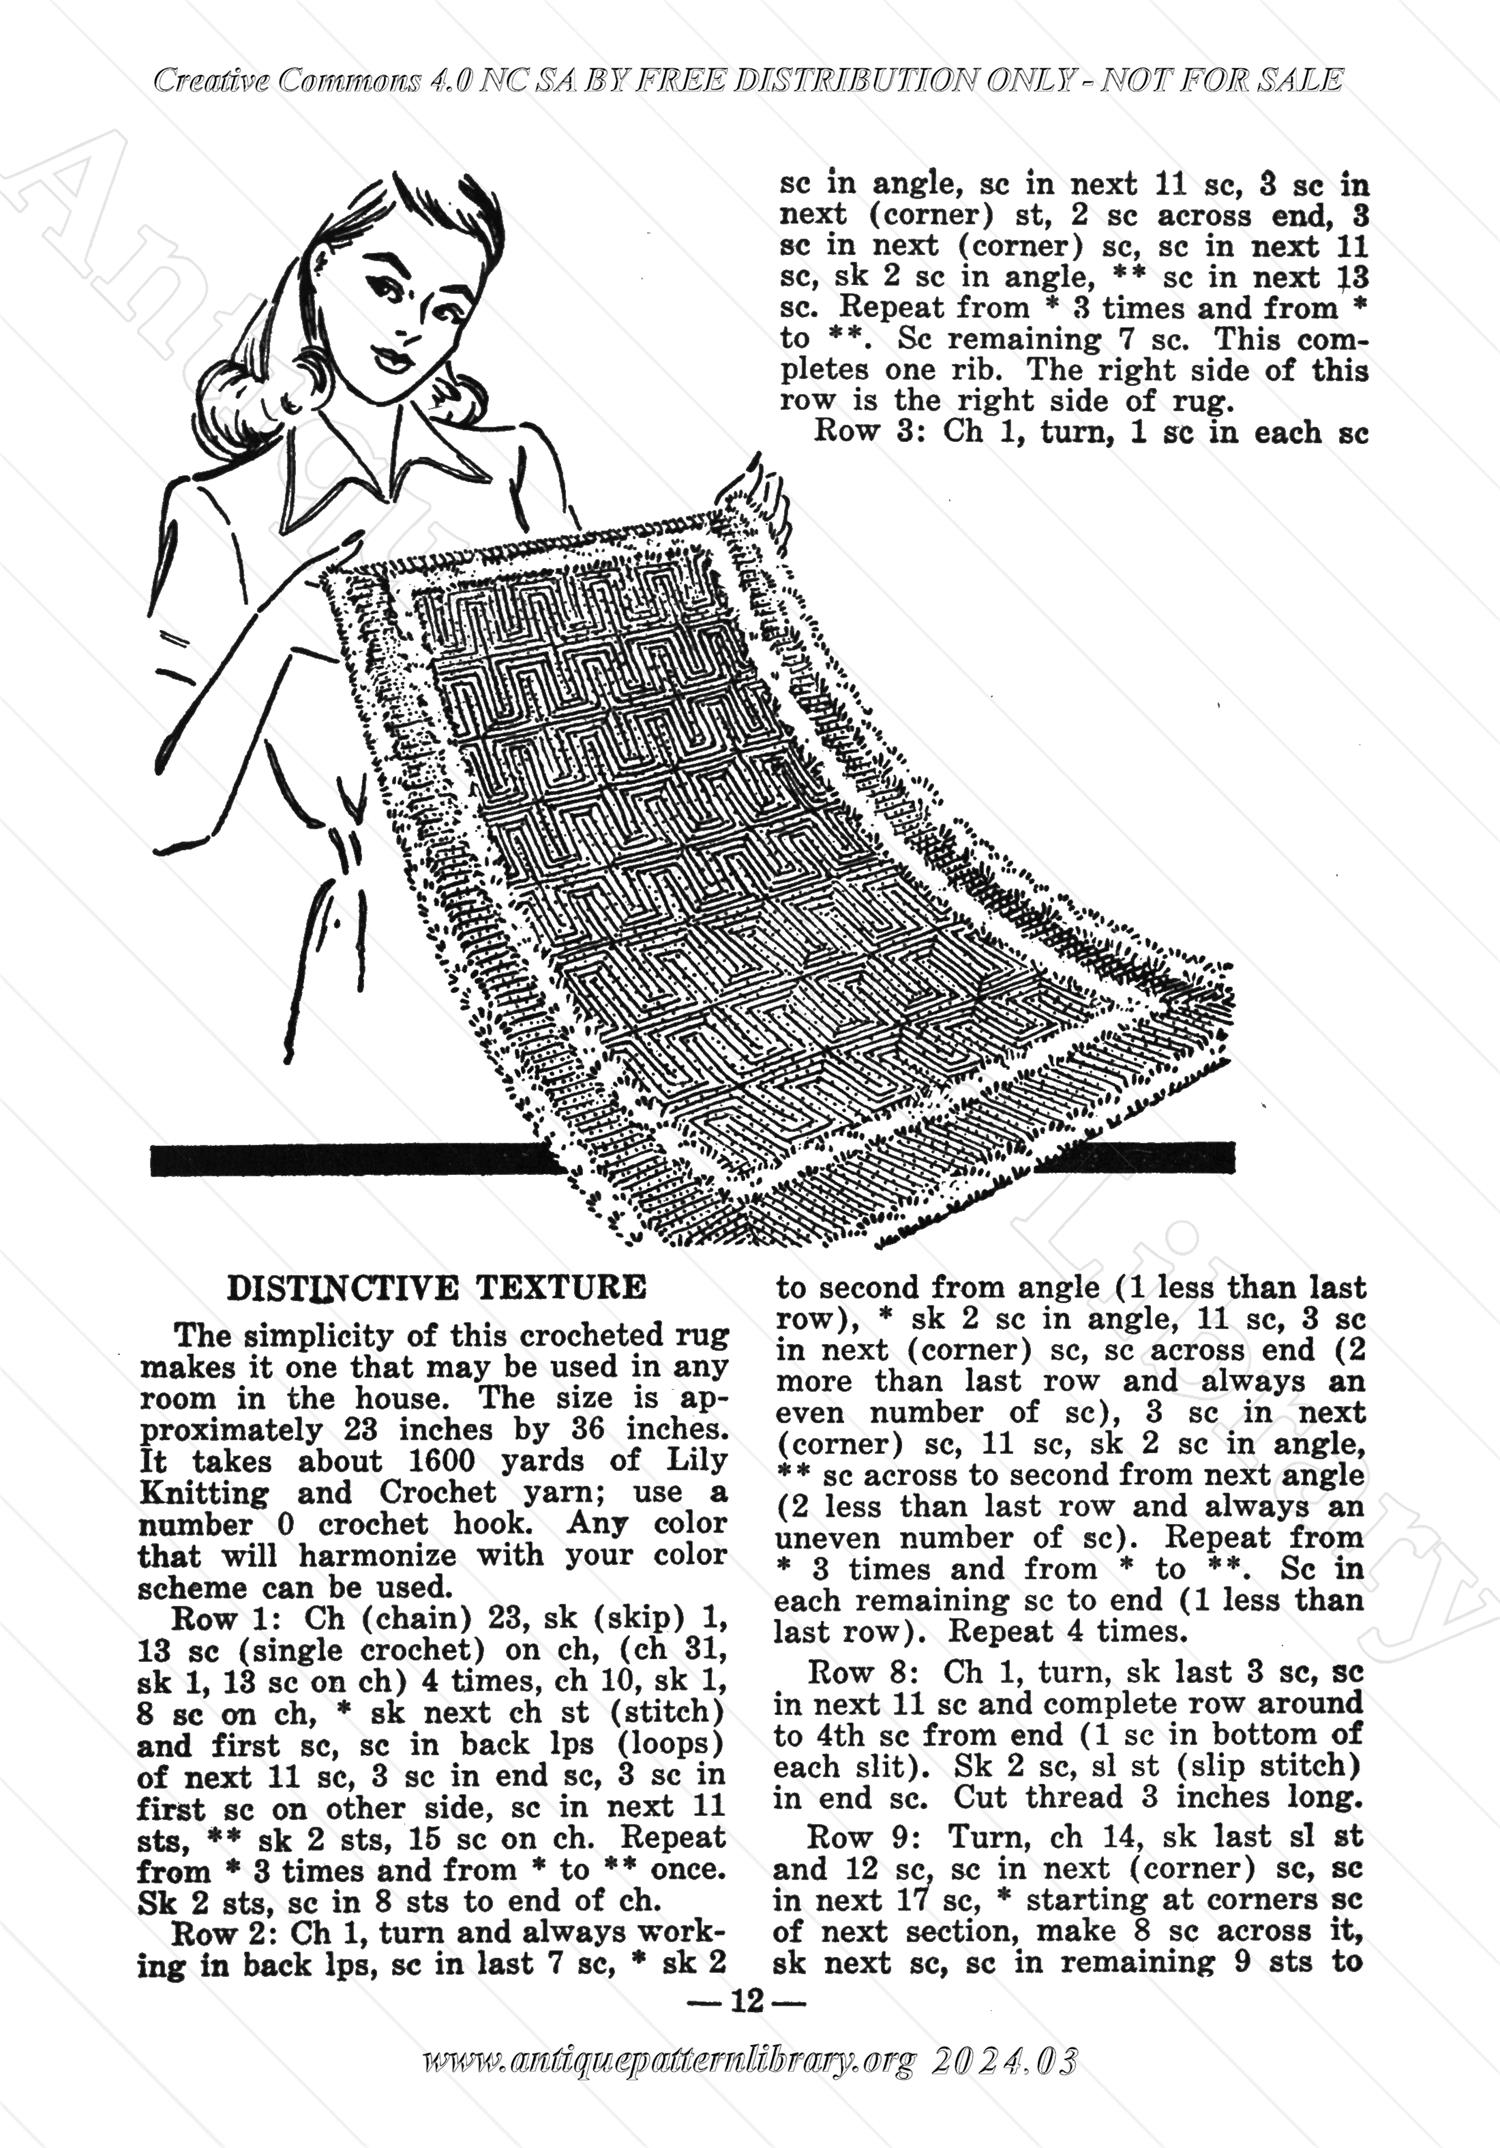 I-WB129 The Workbasket Vol. 12  June 1947 Number 9